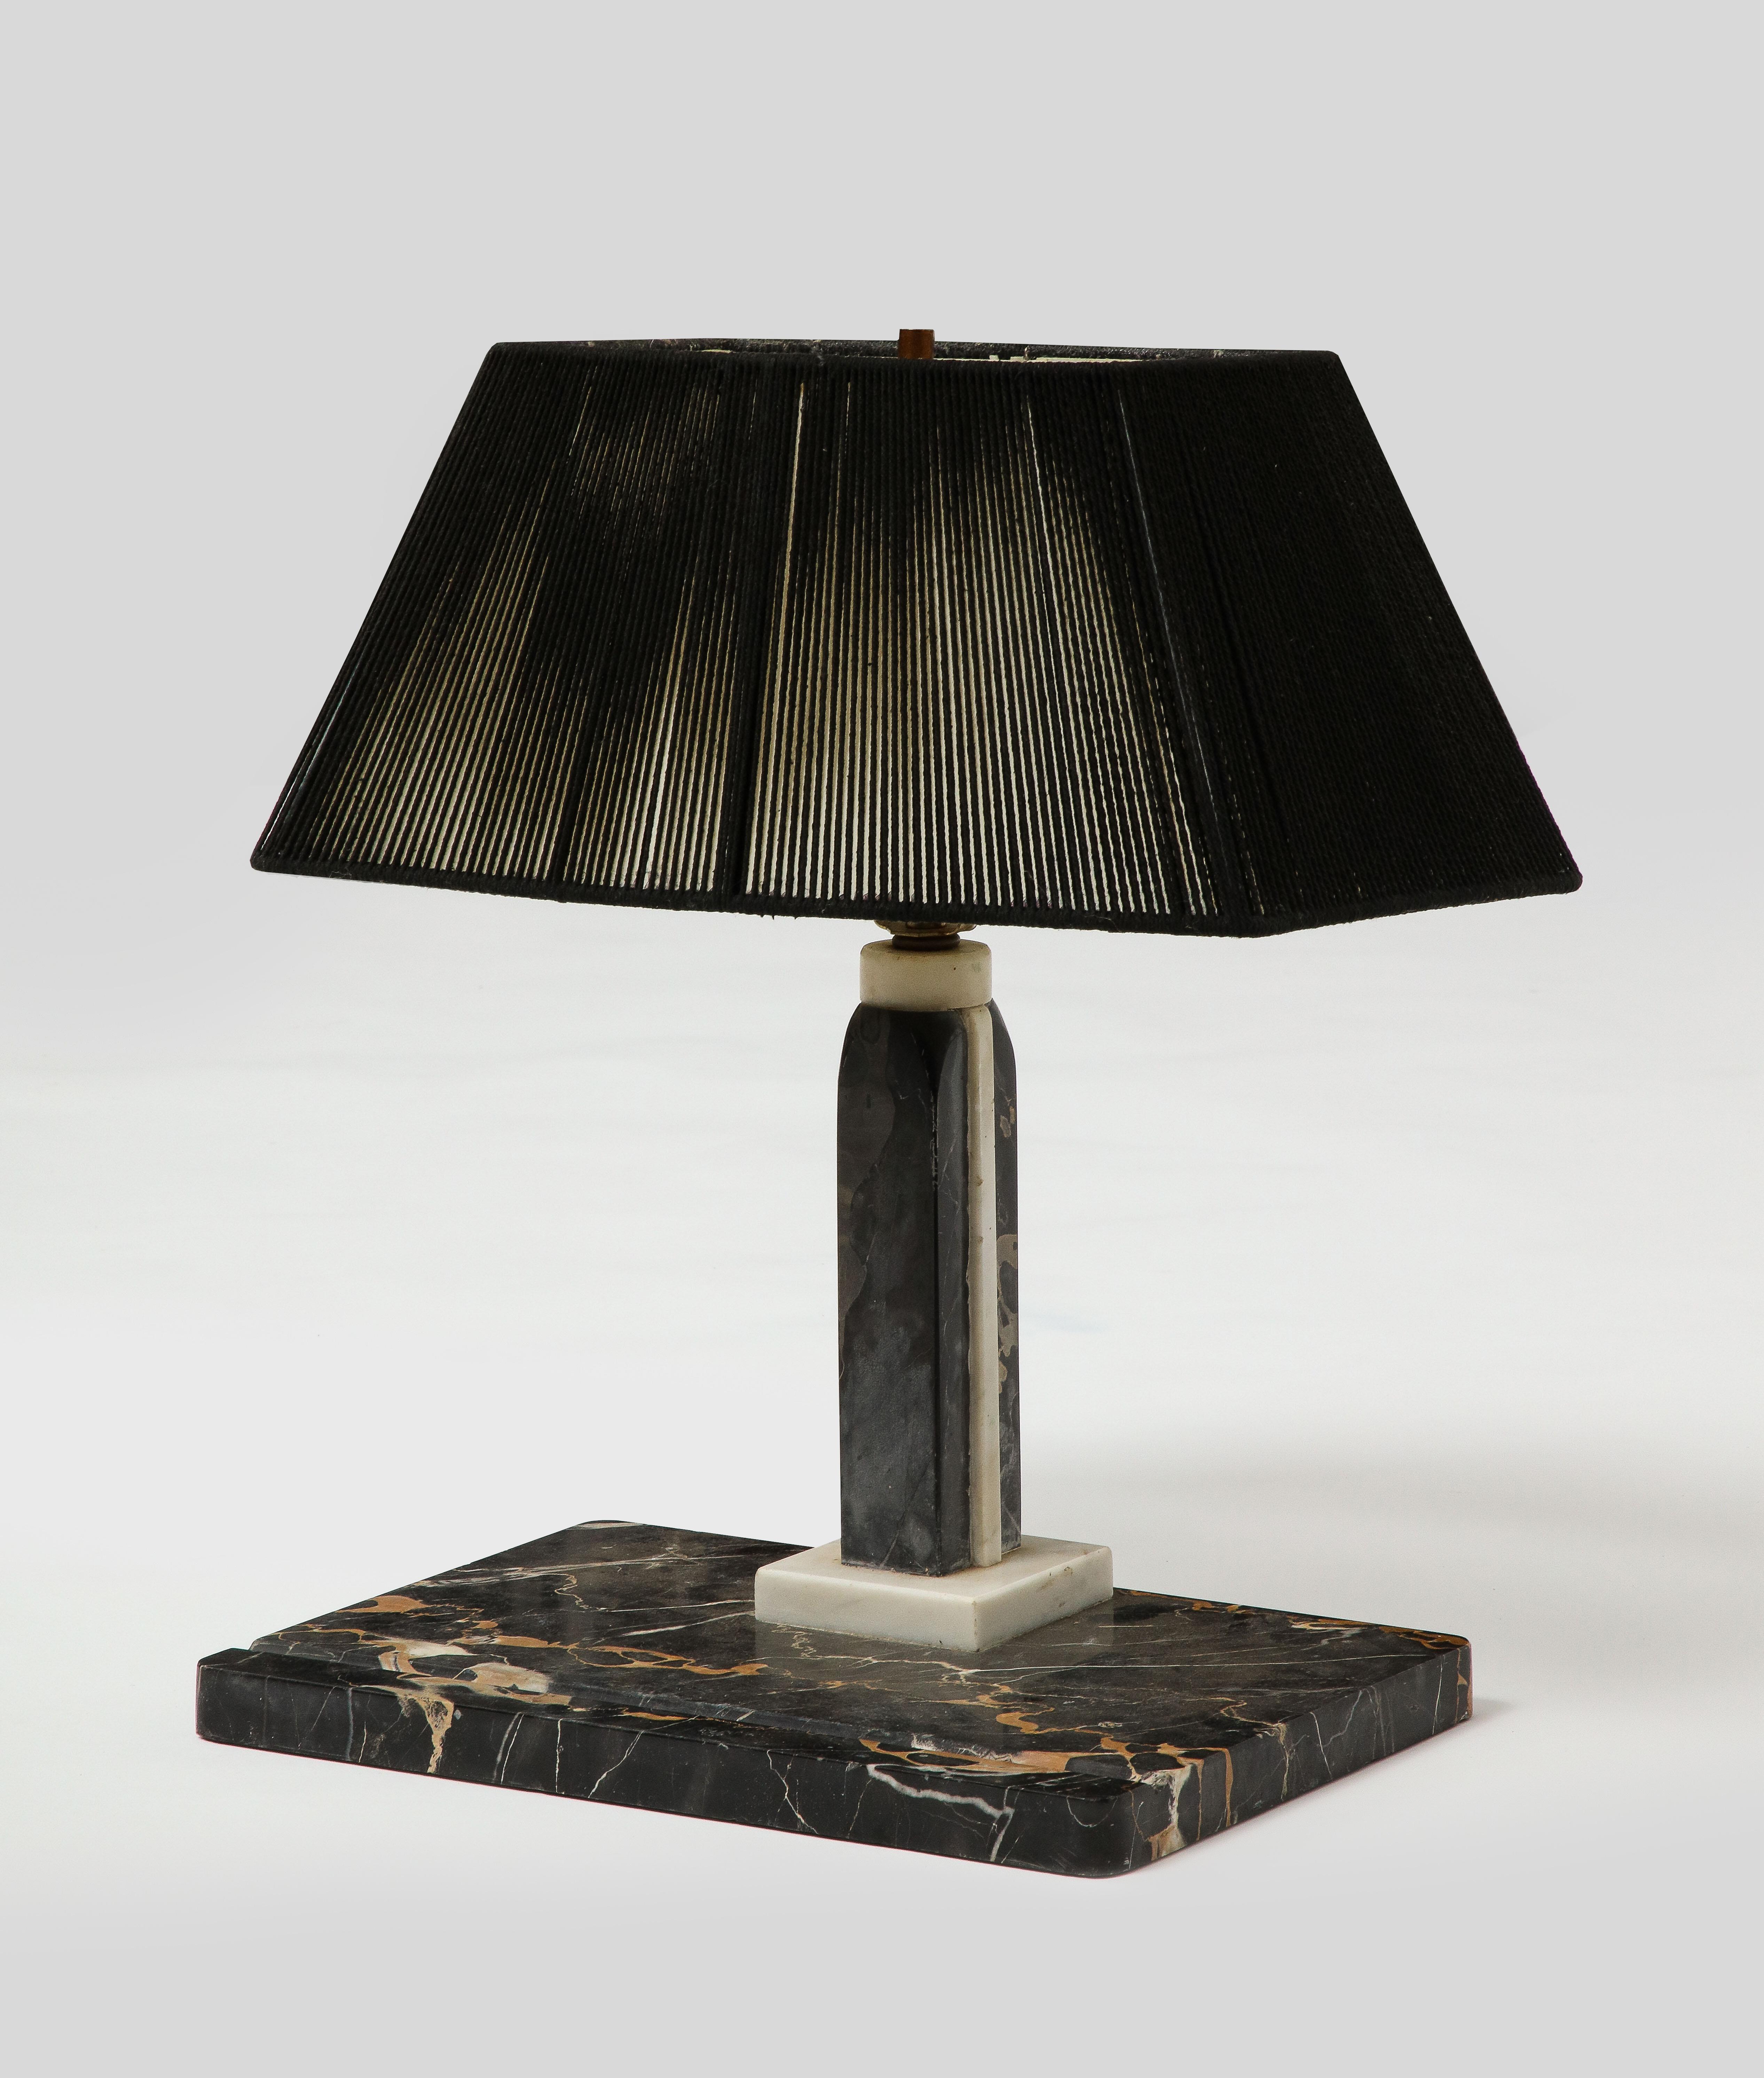 Lampe de table ou de bureau en marbre noir, de style moderne du milieu du siècle, avec abat-jour en corde noire. Présente une arête de stylo à l'avant de la base en marbre.
 